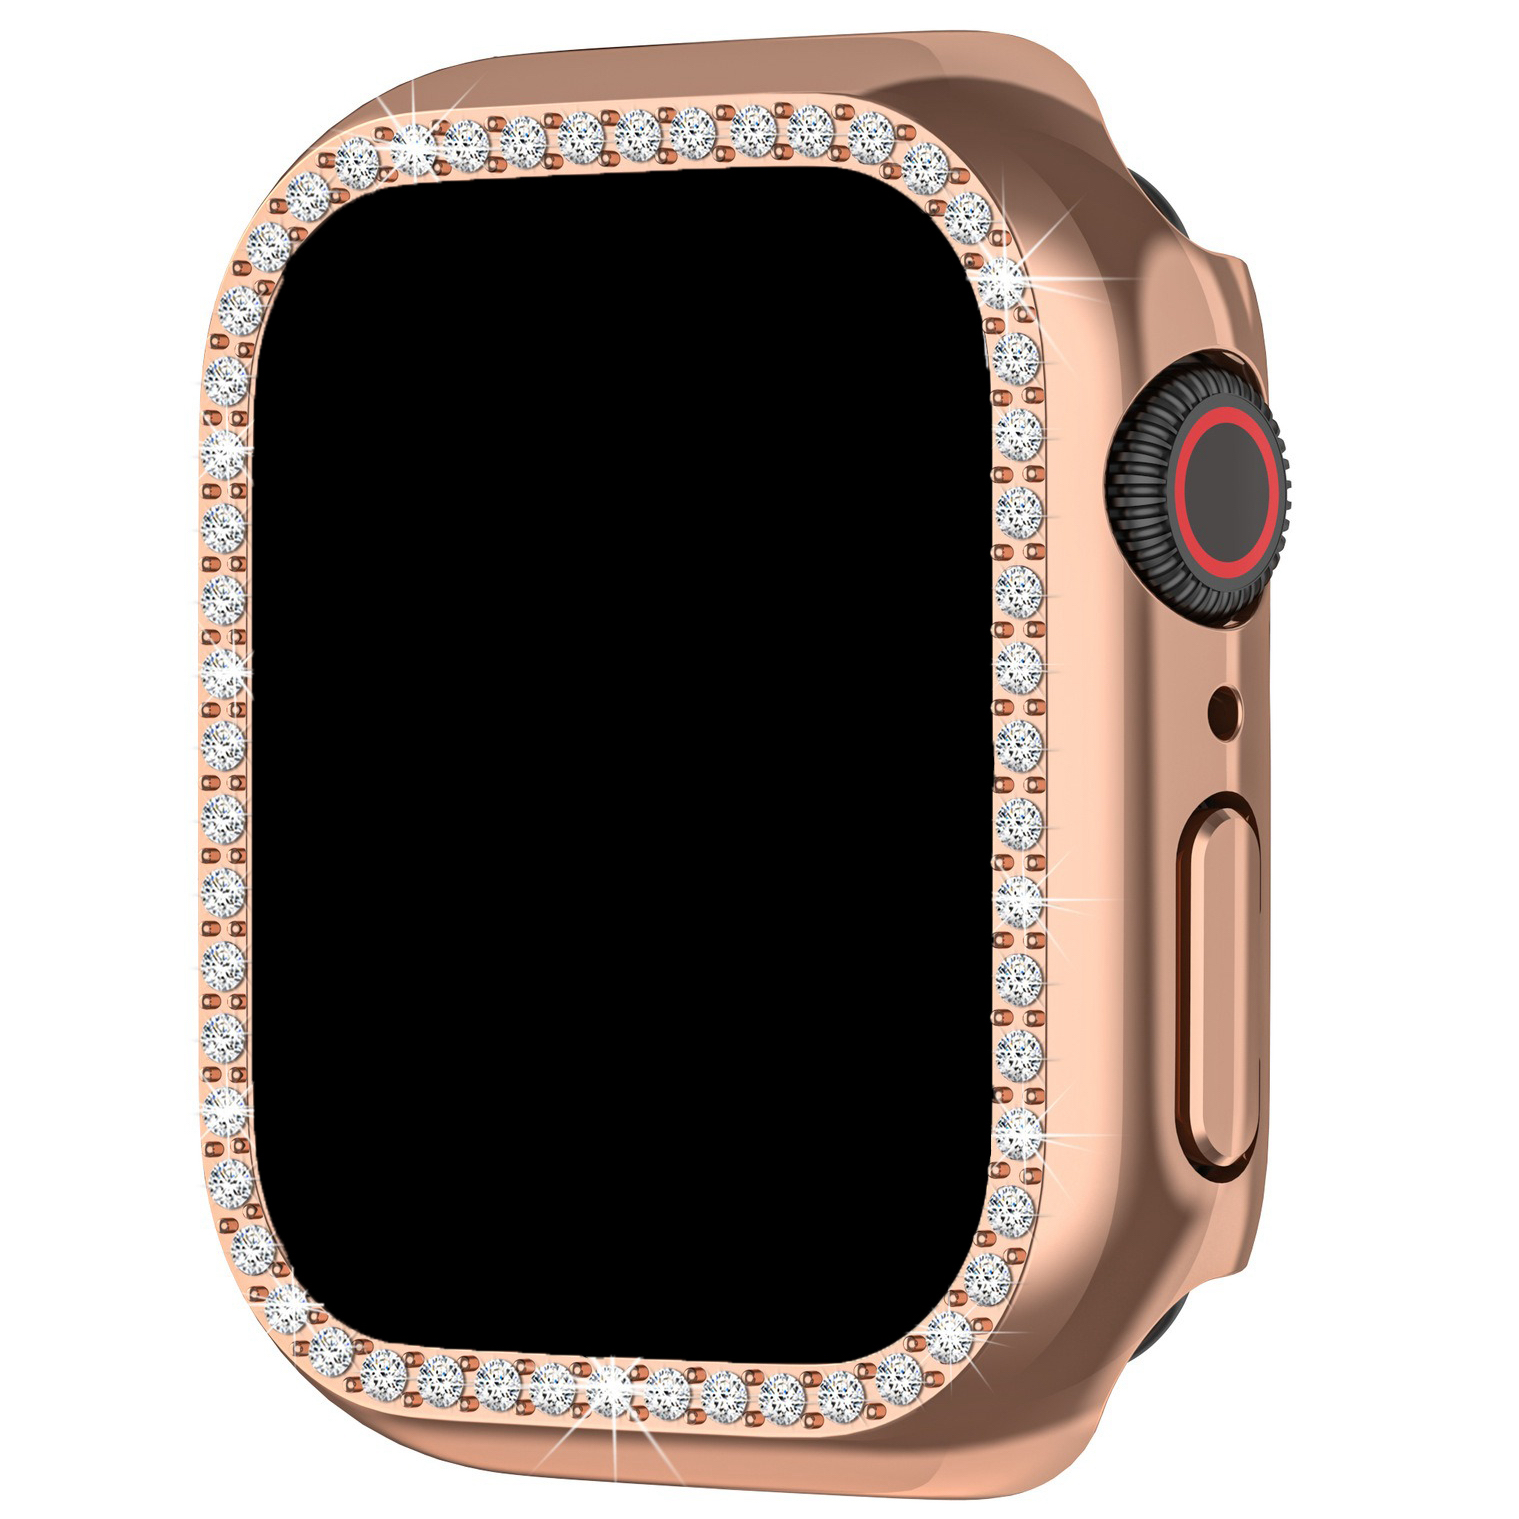 Apple Watch Diamond Case - Rose Gold